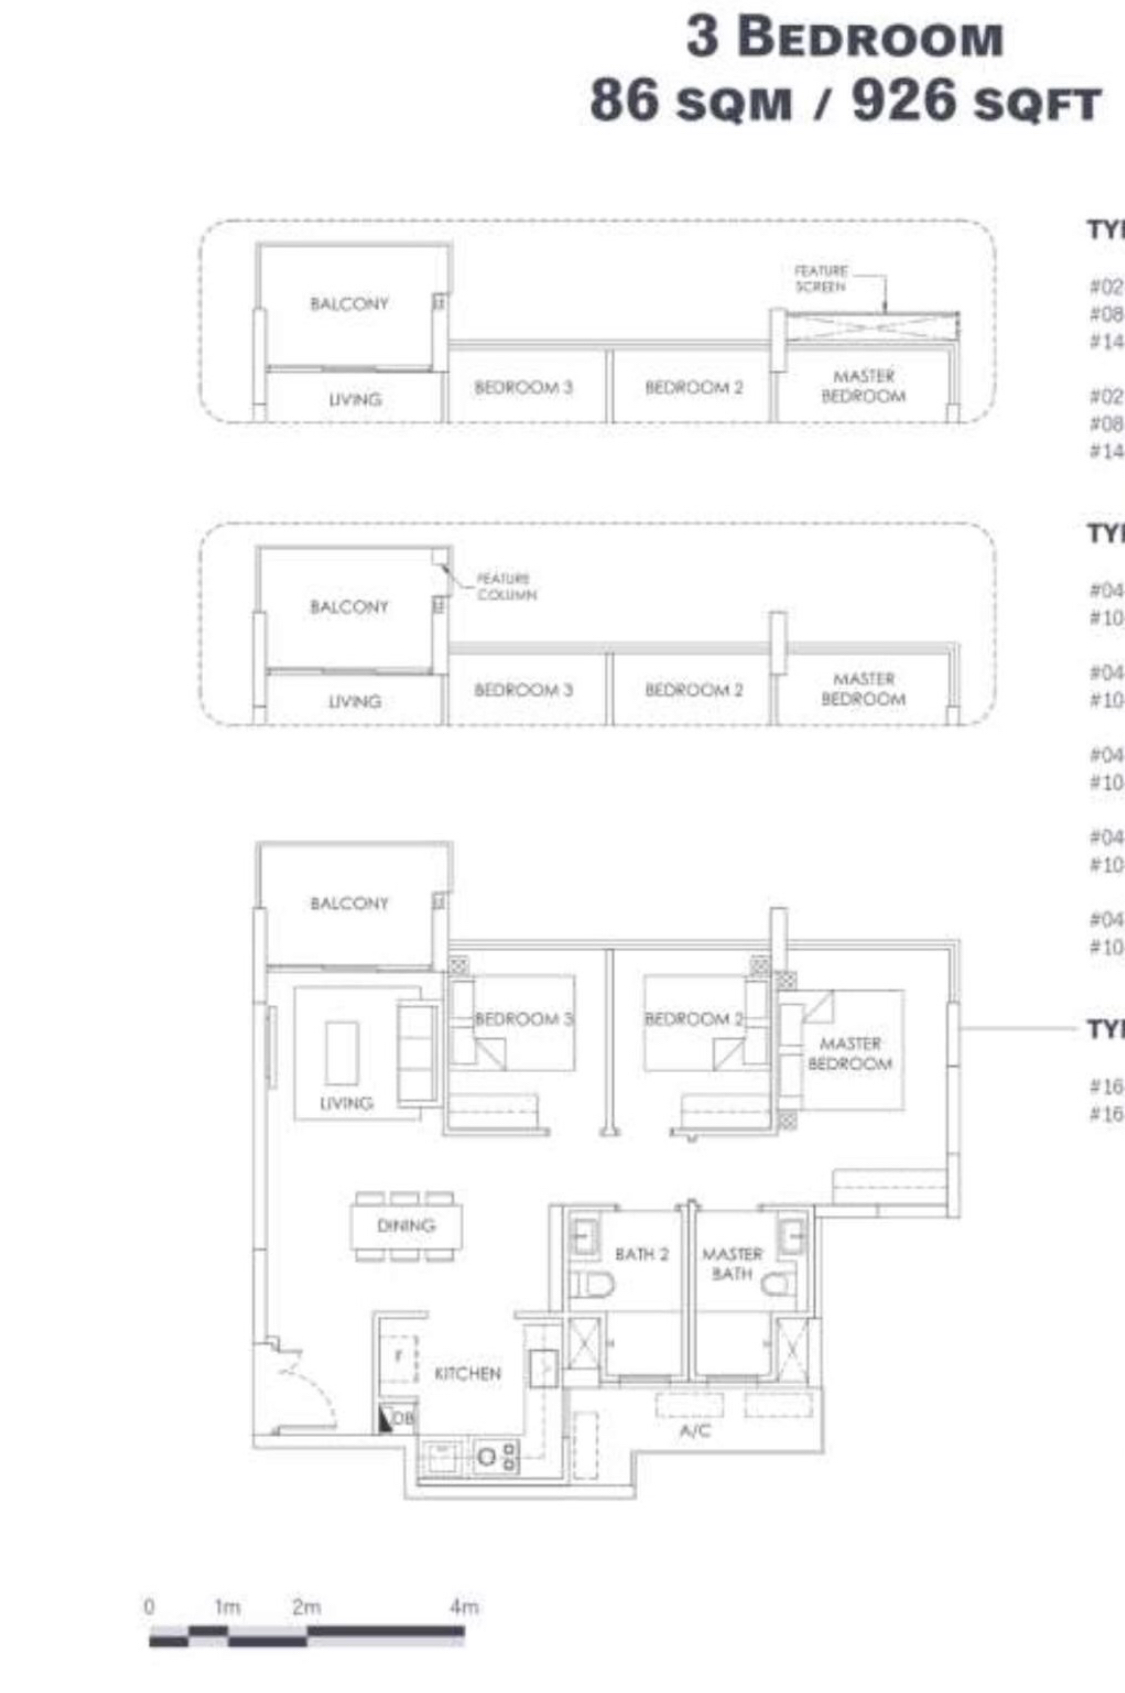 ola ec 3 bedroom floor plan